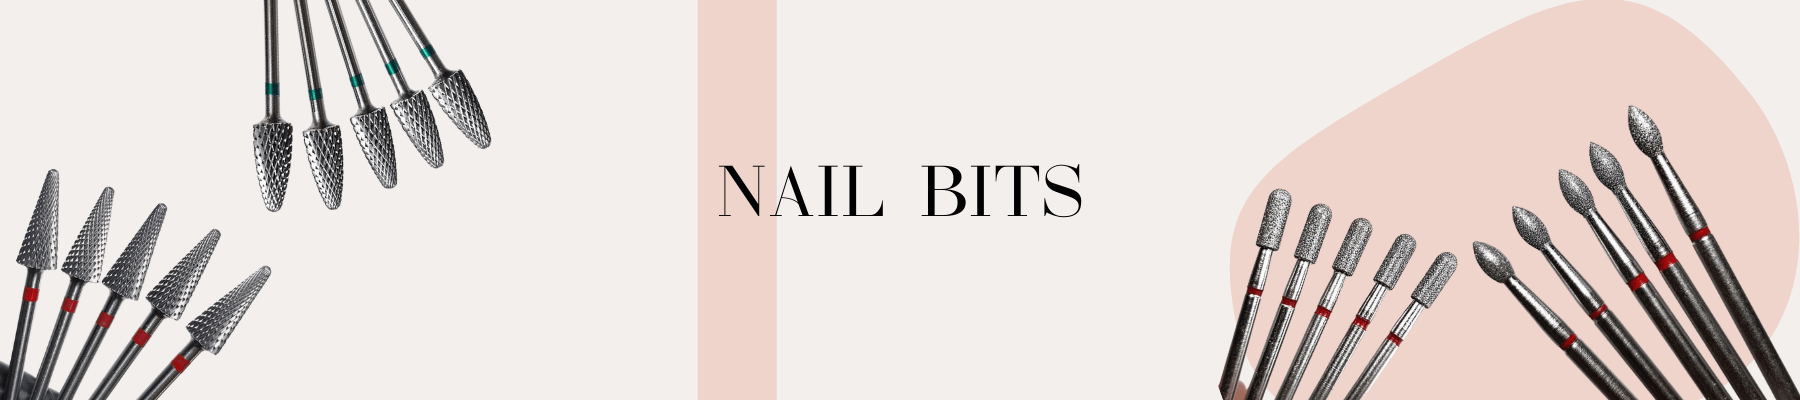 Nail Bits